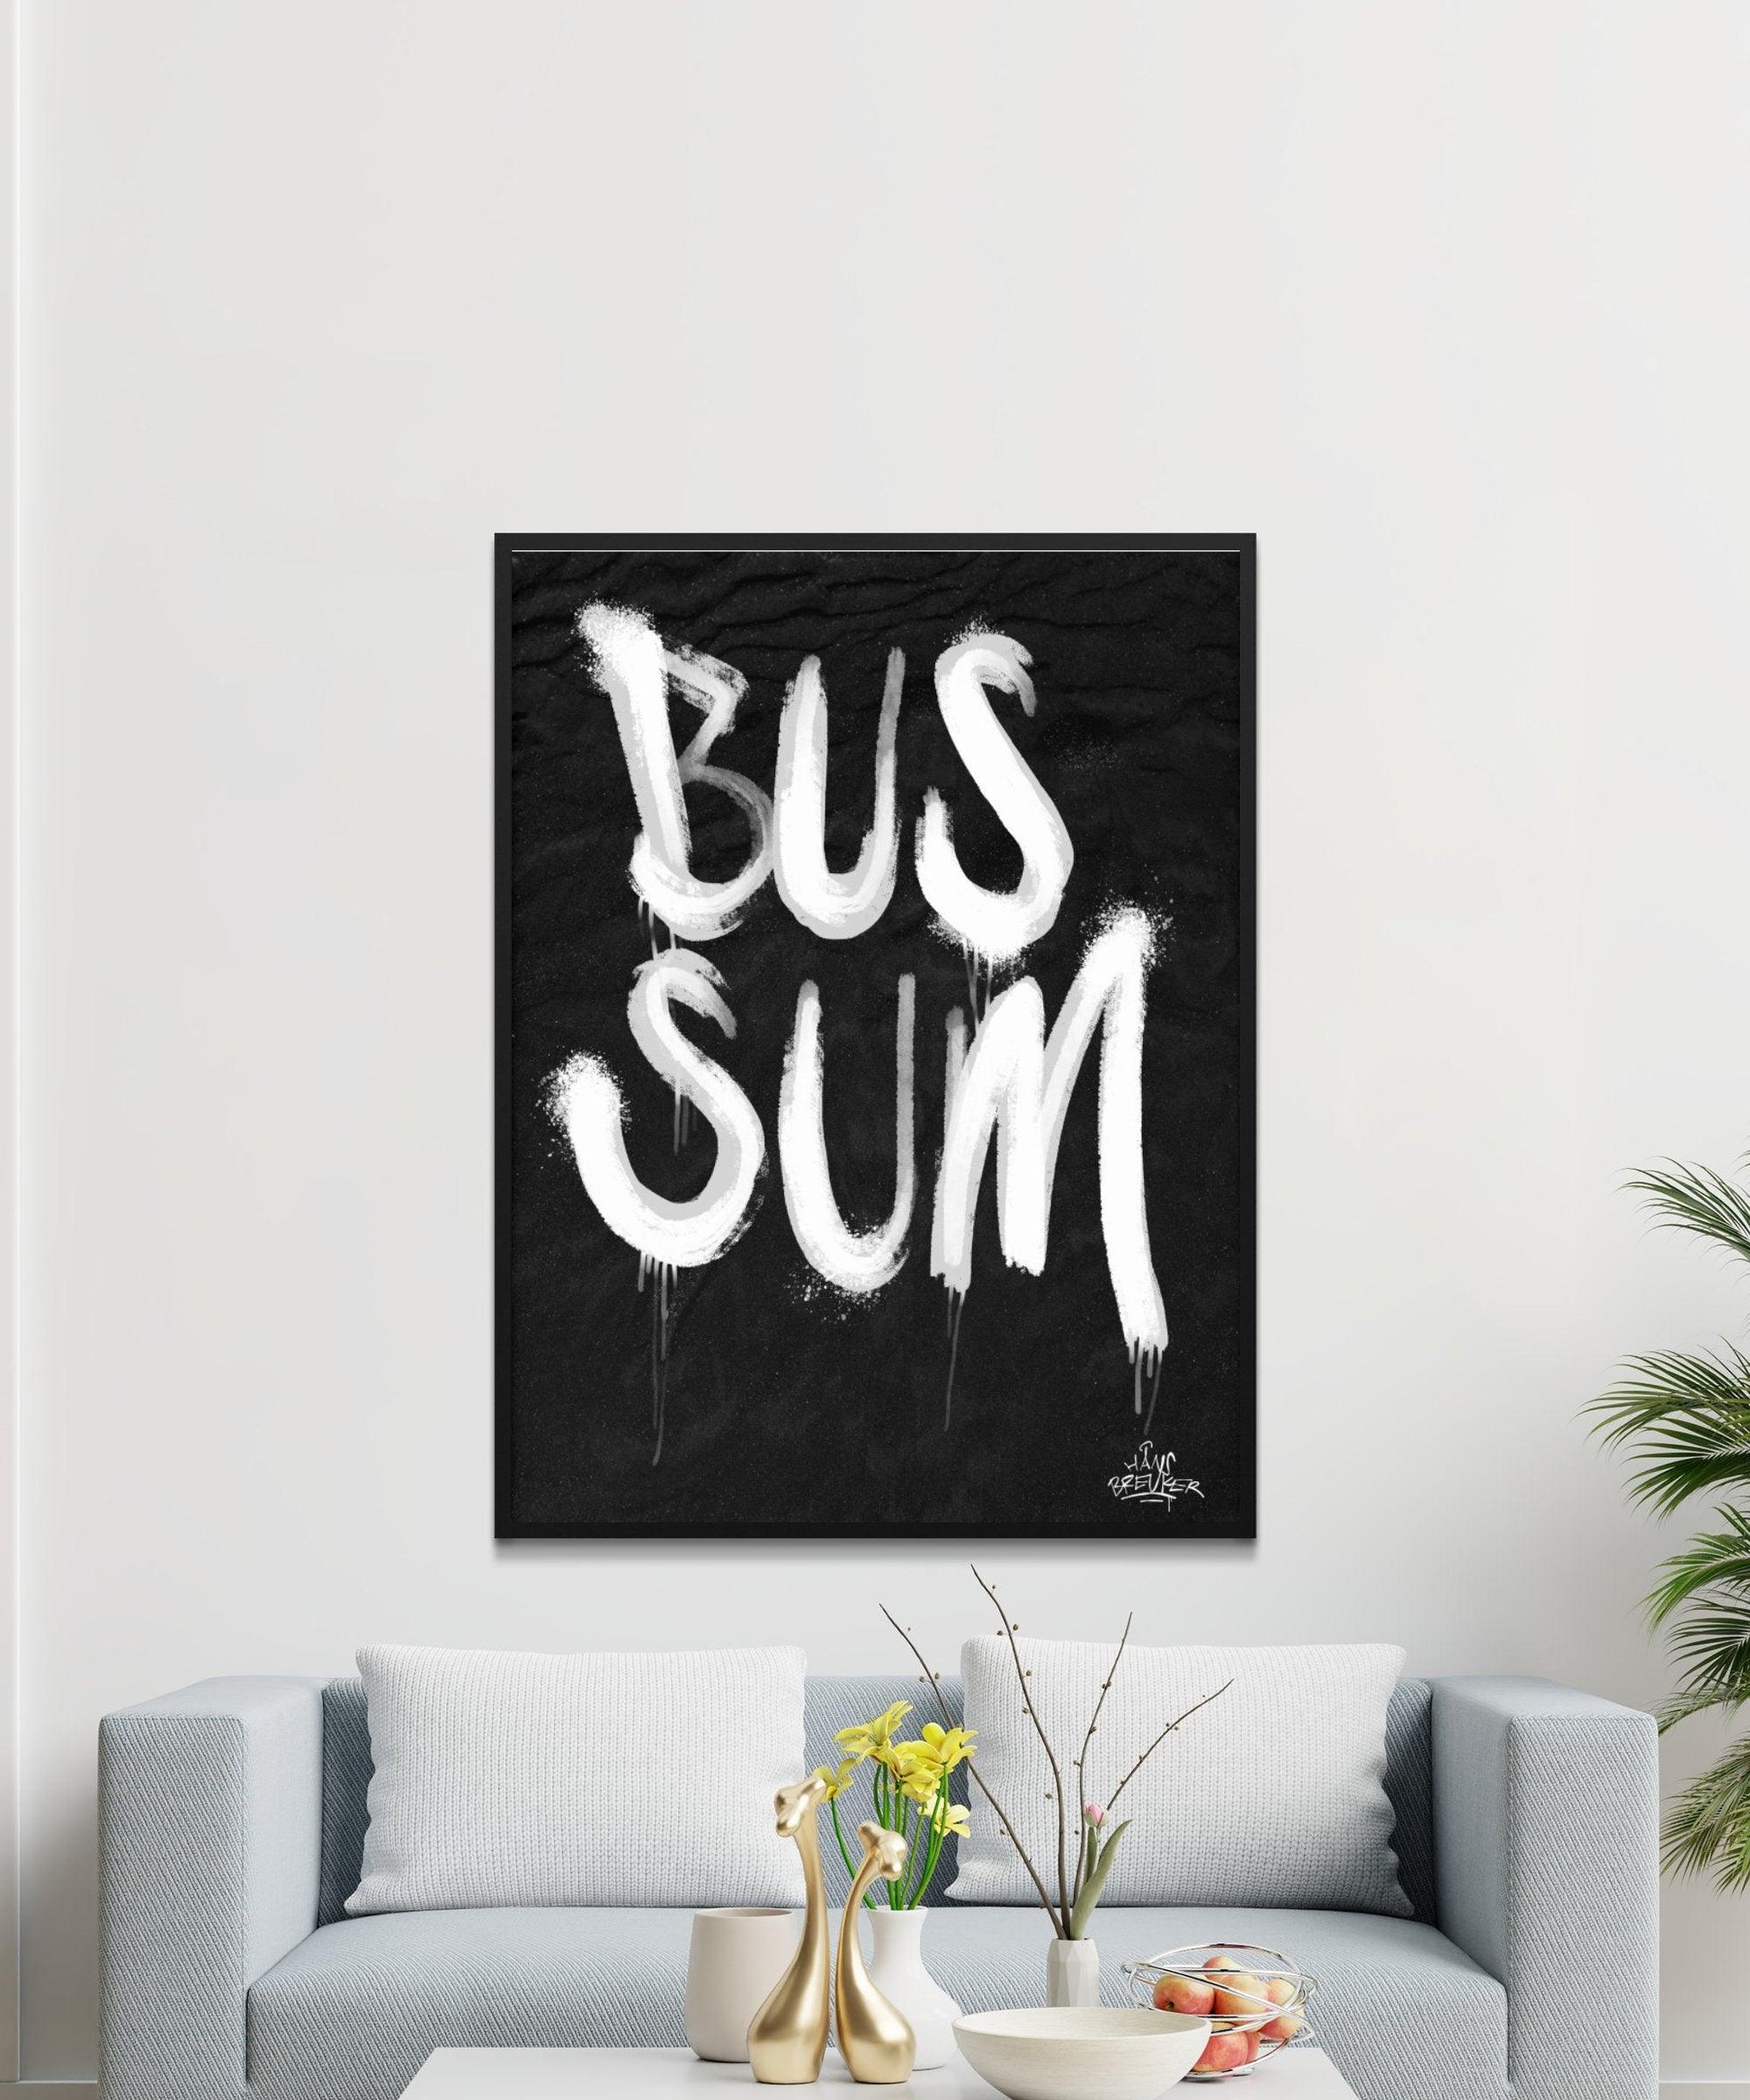 Kalligrafie Poster Bussum - Hans Breuker